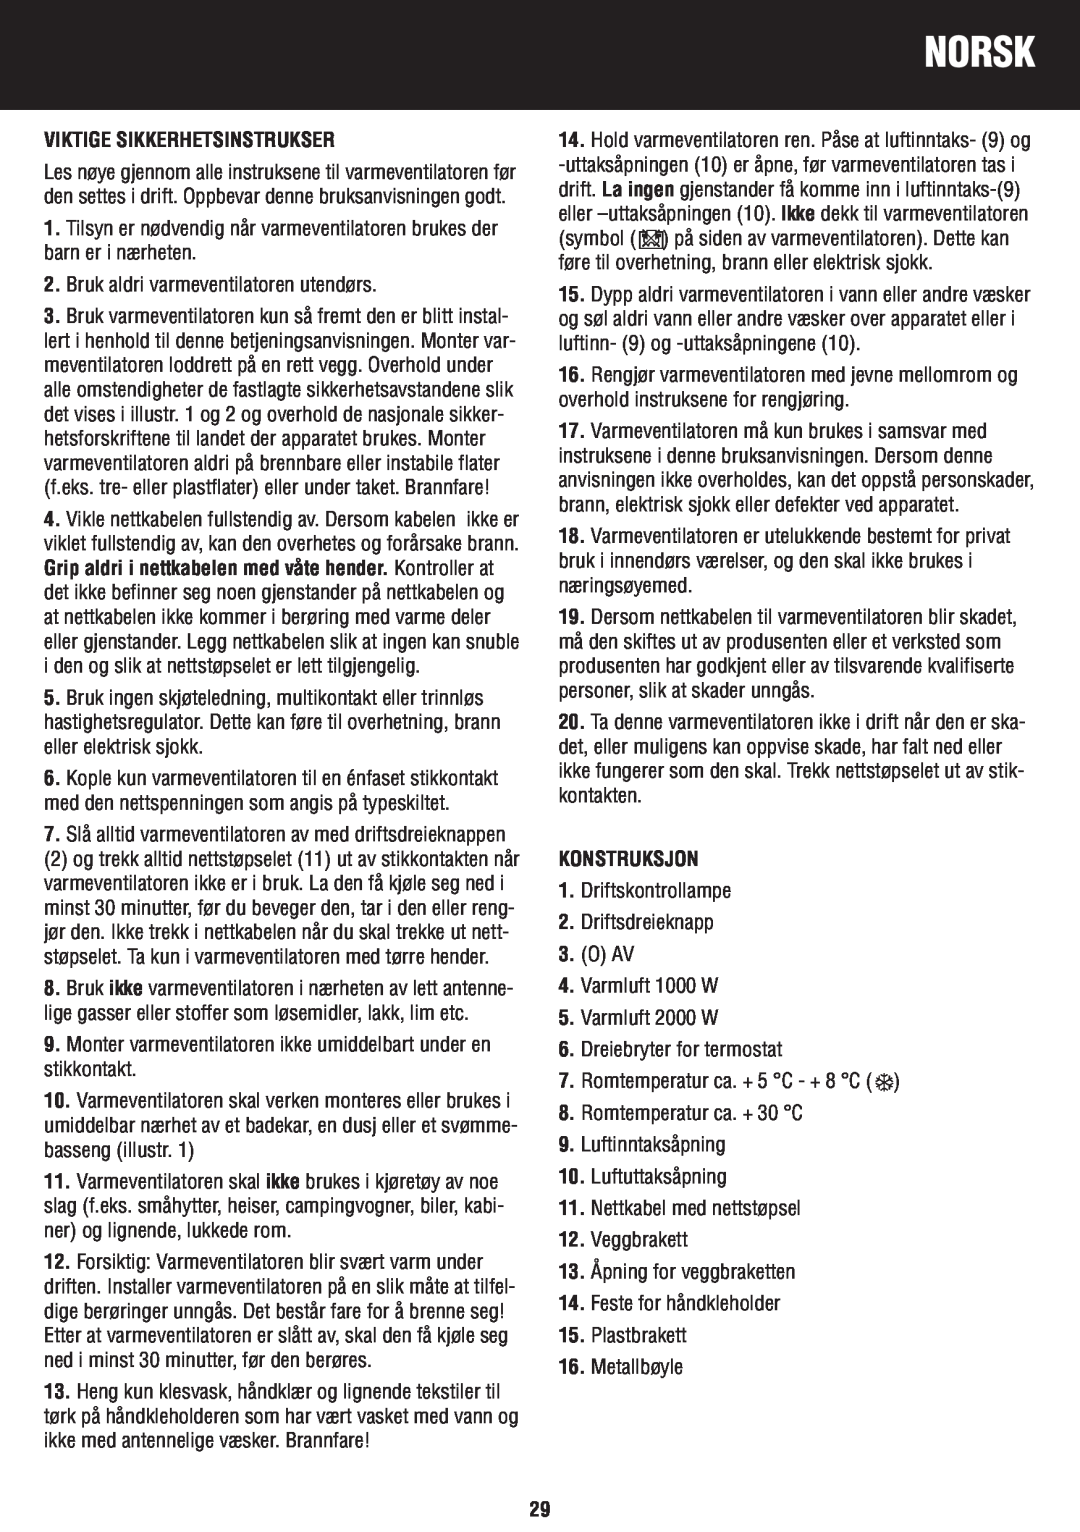 Honeywell BH-777FTE manual do utilizador Norsk, Viktige Sikkerhetsinstrukser, Konstruksjon 